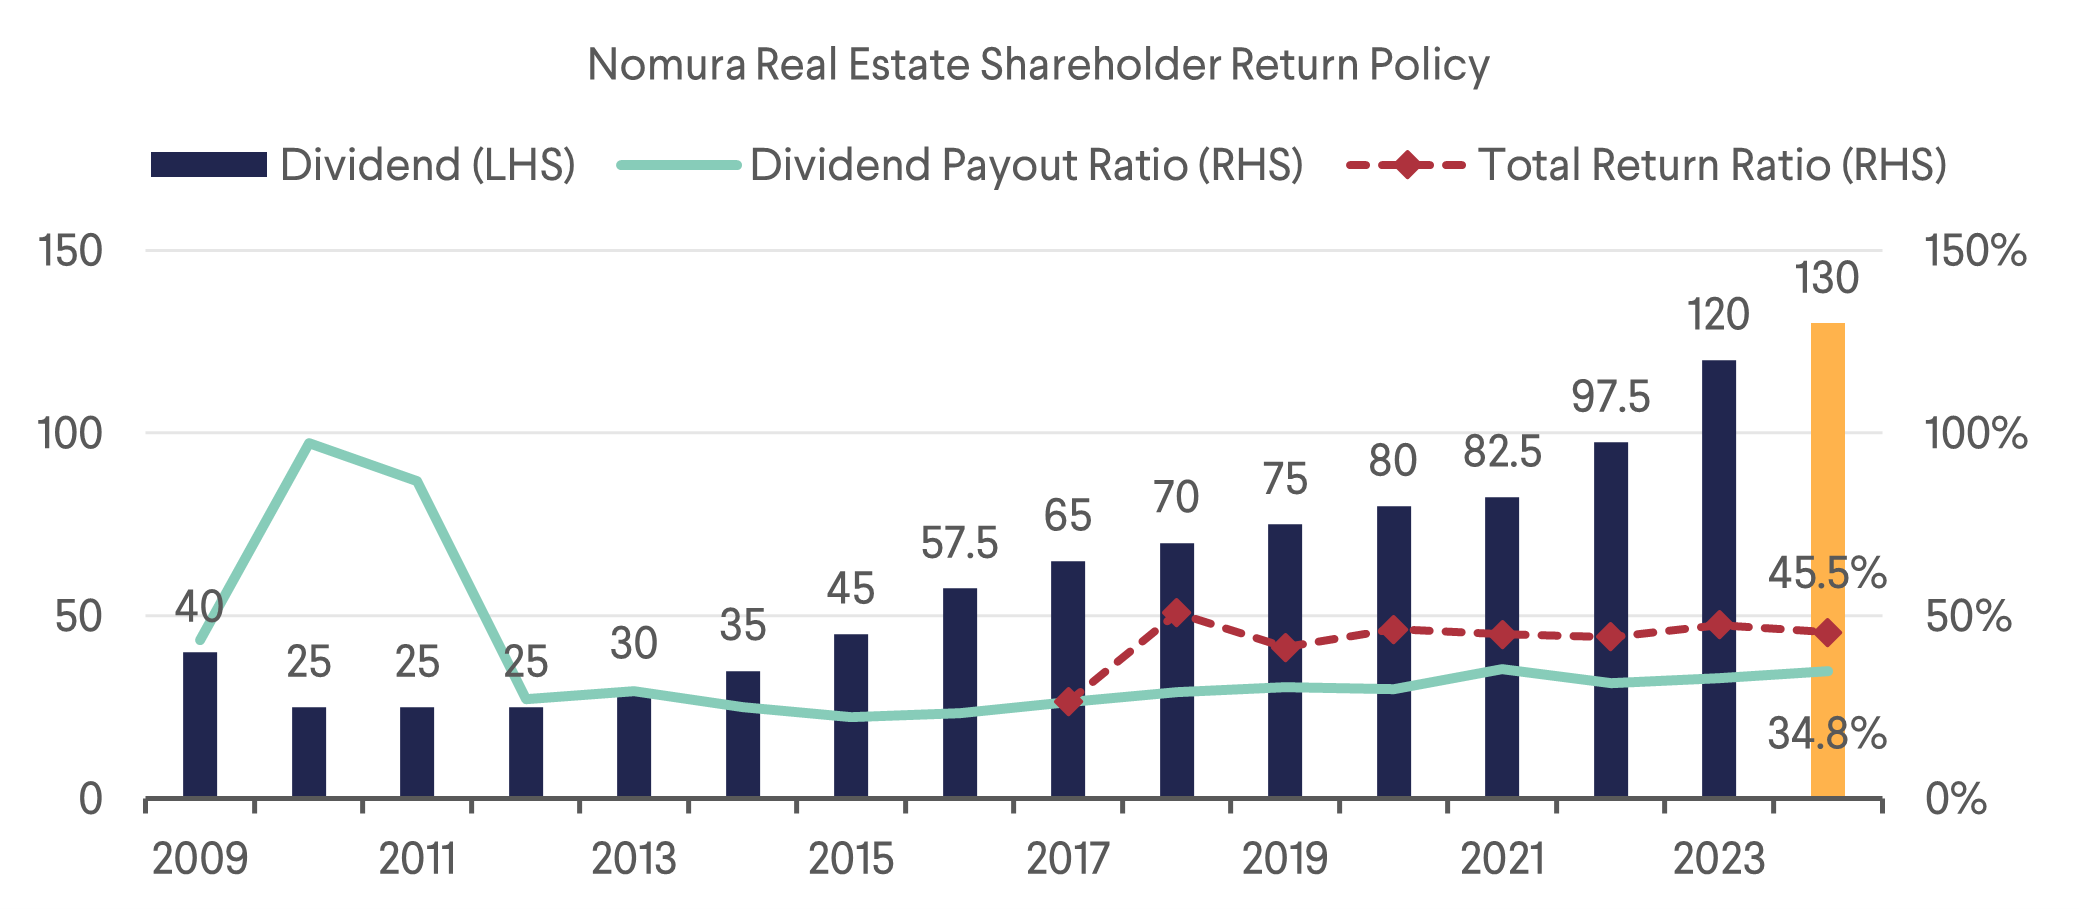 Nomura Real Estate Shareholder Return Policy